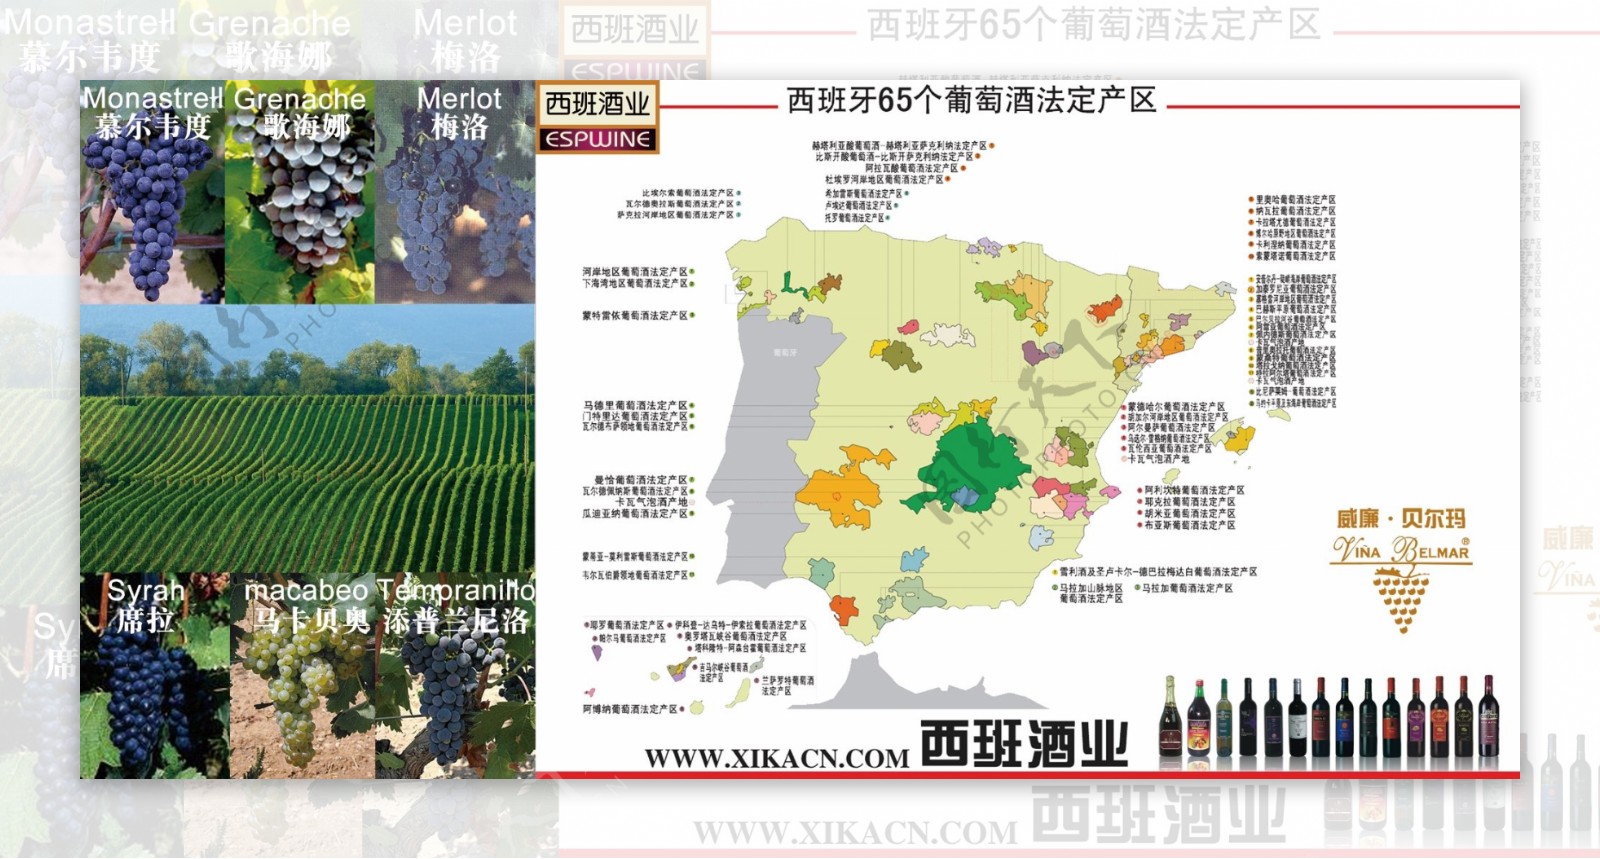 西班牙葡萄酒产区图图片